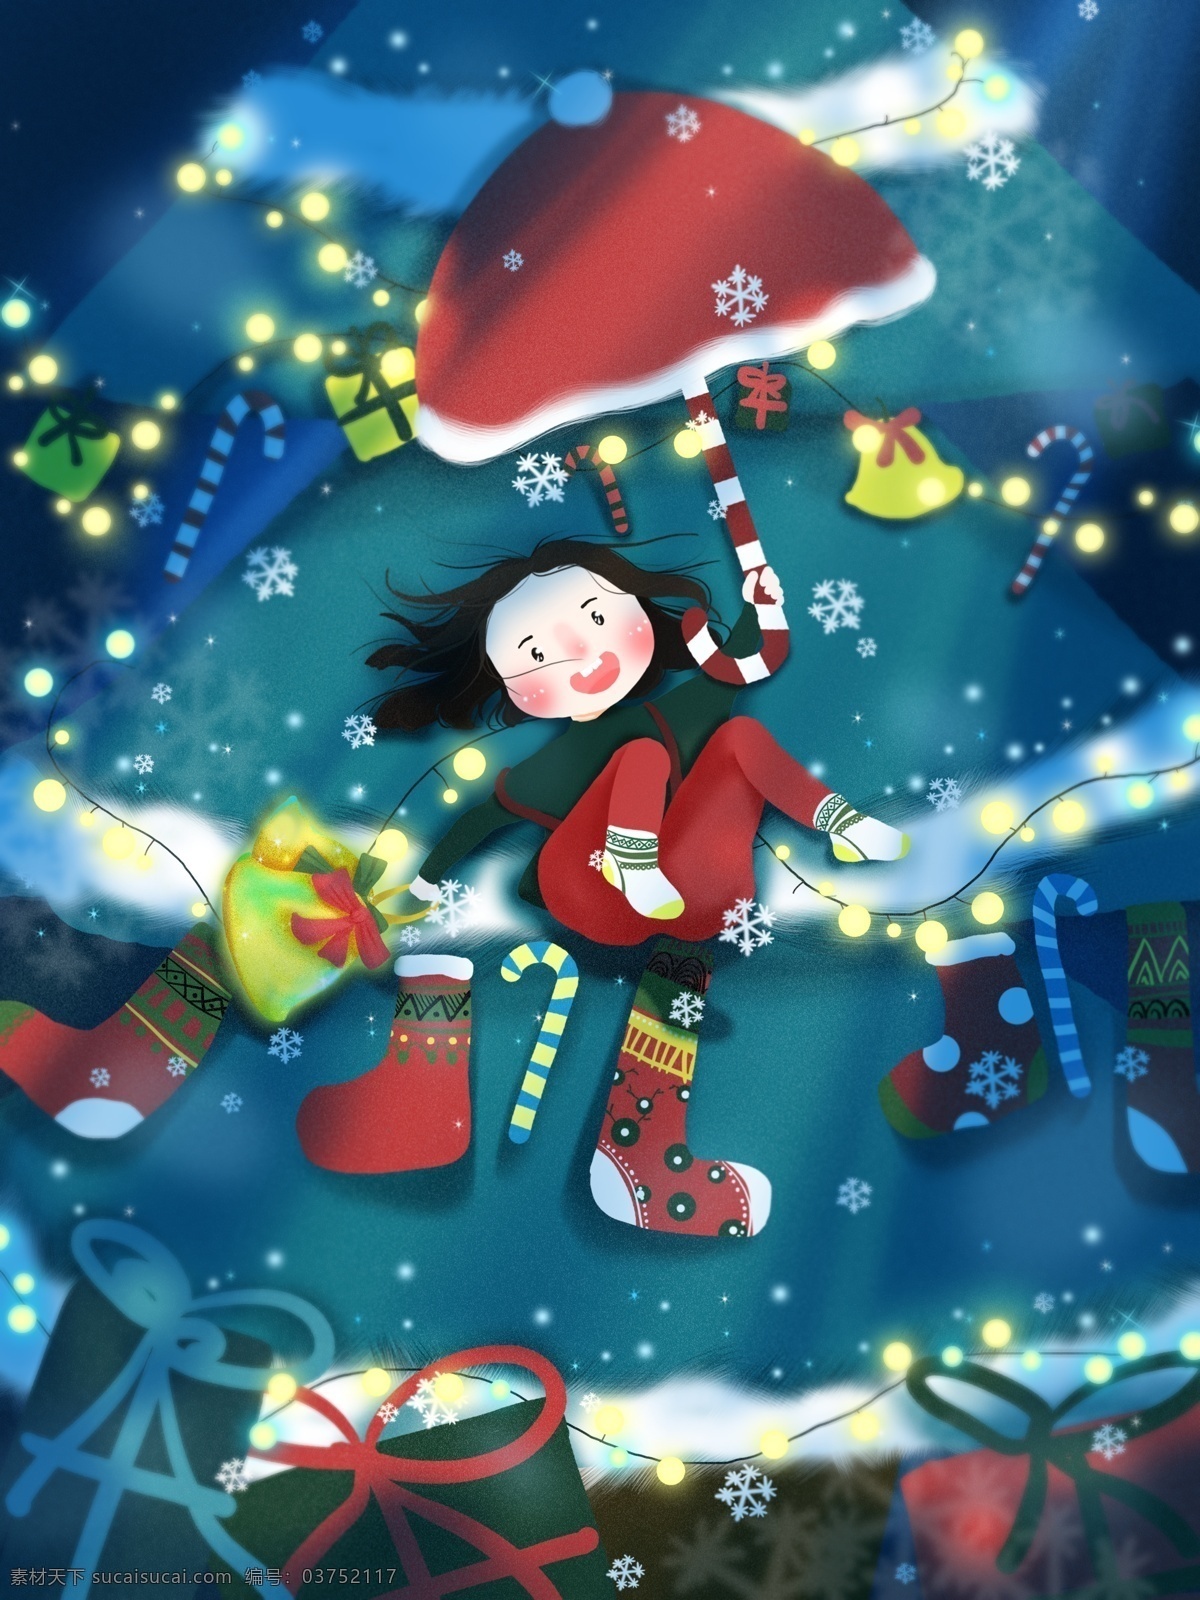 圣诞节 女孩 铃铛 圣诞树 袜子 礼物 欢乐 插画 壁纸 蓝色 光 圣诞 节 配图 桌面 雪花 圣诞帽 灯 夜 红 绿 伞 下雪